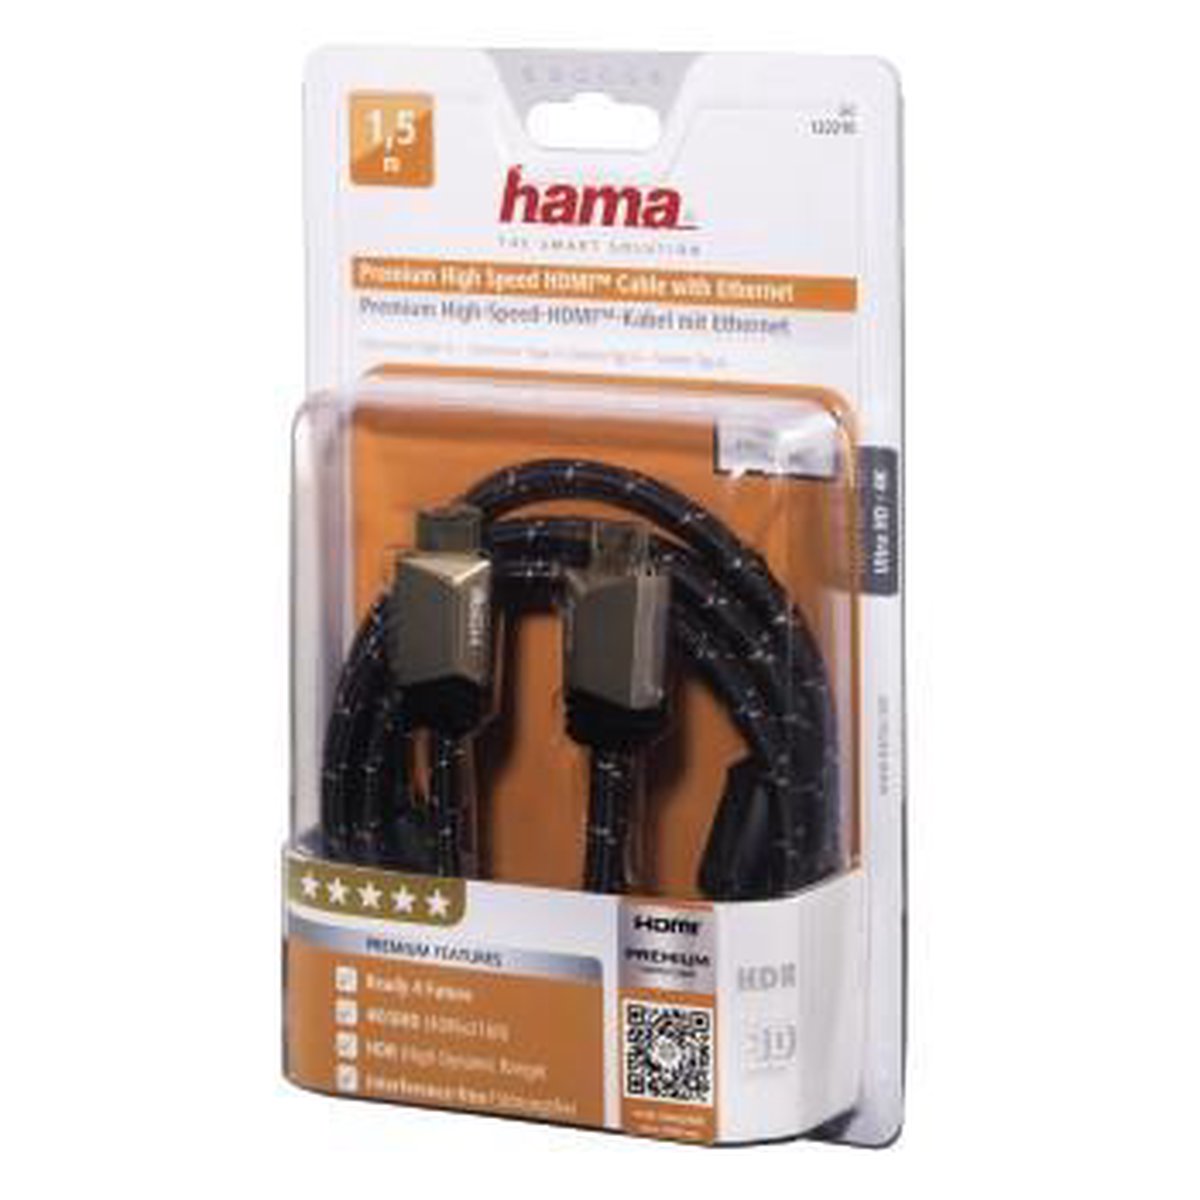 Hama HDMI kabel Premium - 1.5 meter | bol.com